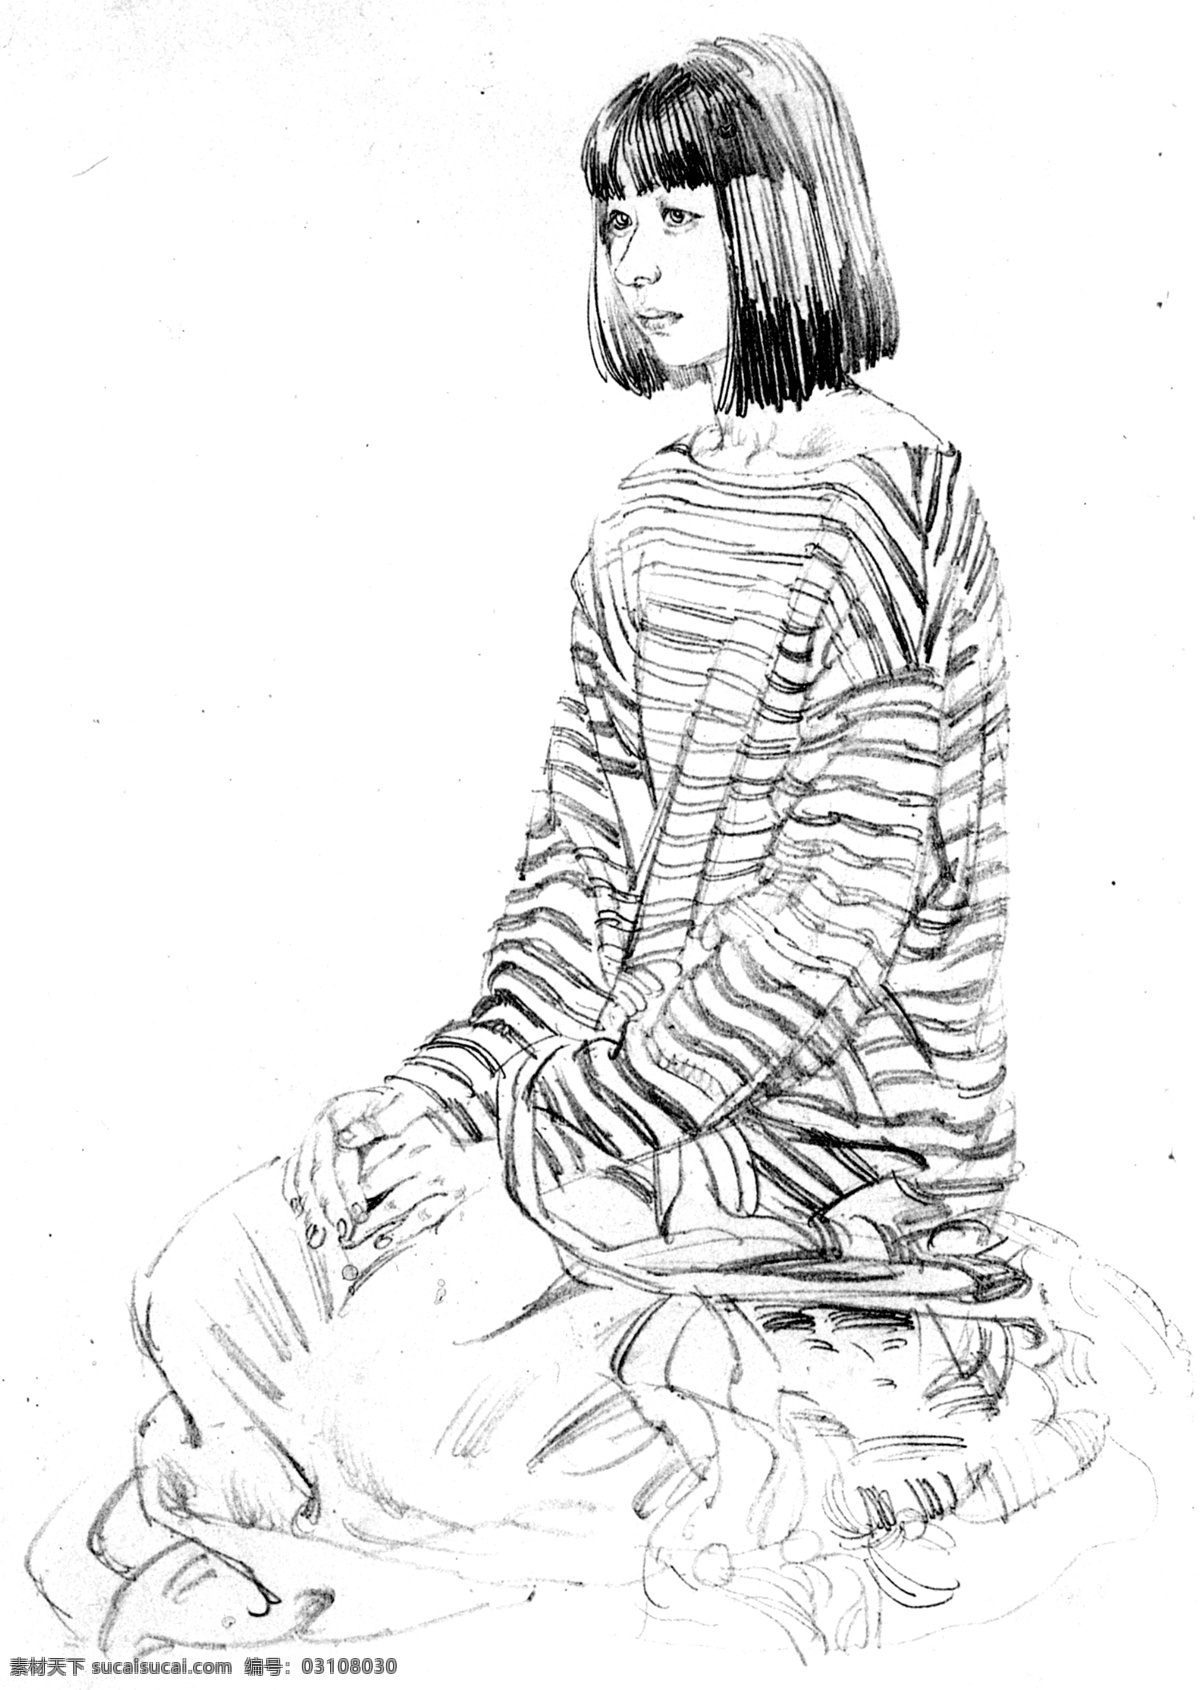 何家英手稿 中国 画家 何家英 素描 手稿 侧坐 刘海 凝望 少女 绘画书法 文化艺术